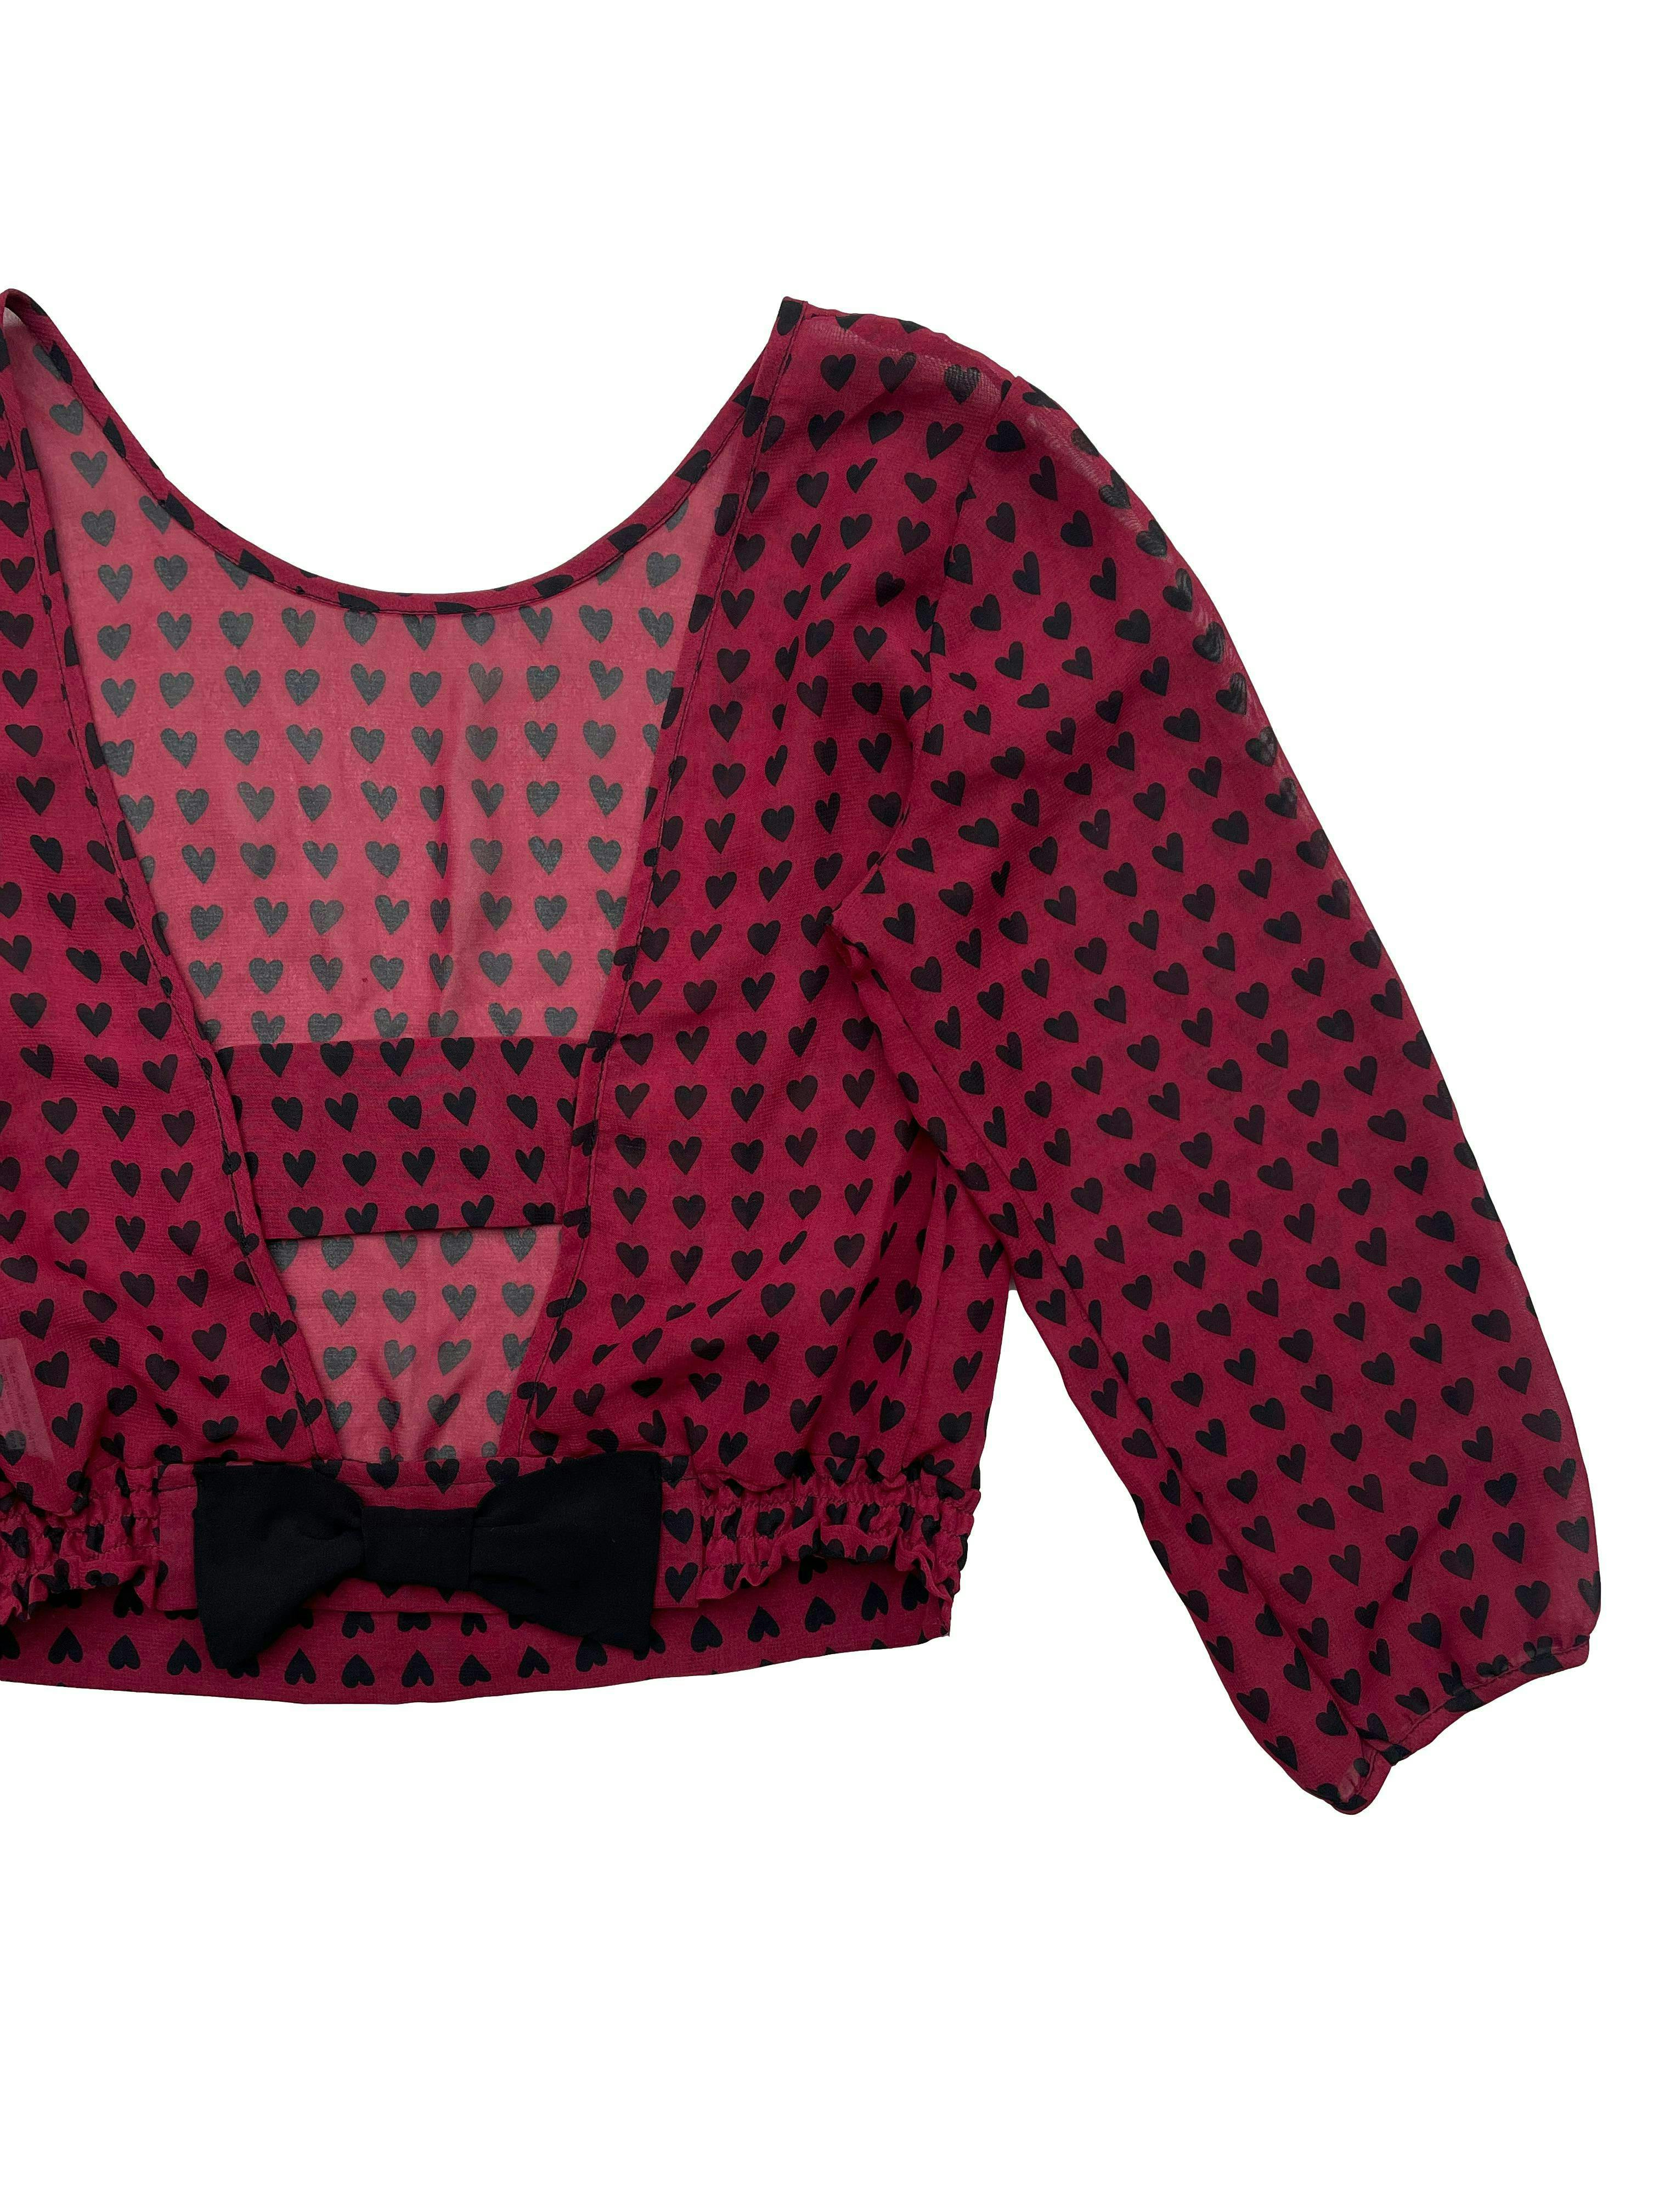 Blusa Xiomi de gasa guinda con estampado de corazones negros, abertura en la espalda, manga 3/4 y lazo en la basta. Busto: 90cm, Largo: 40cm